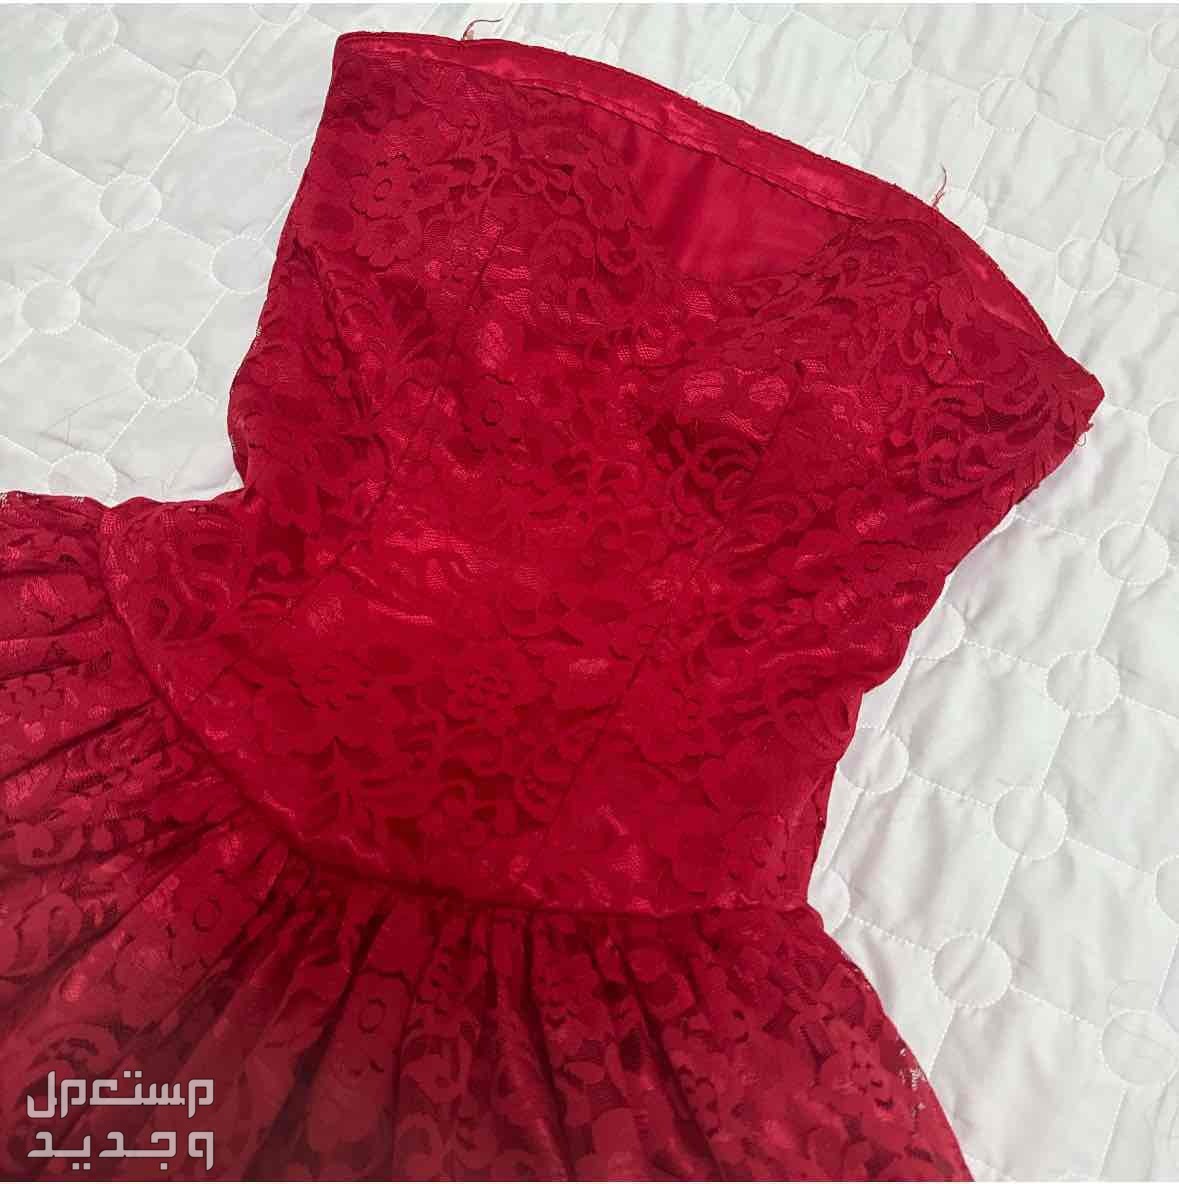 فستان دنتيل فرنسي تم تفصيله ب 600 ولبس مره وحده بس وجديد  في الرياض بسعر 100 ريال سعودي